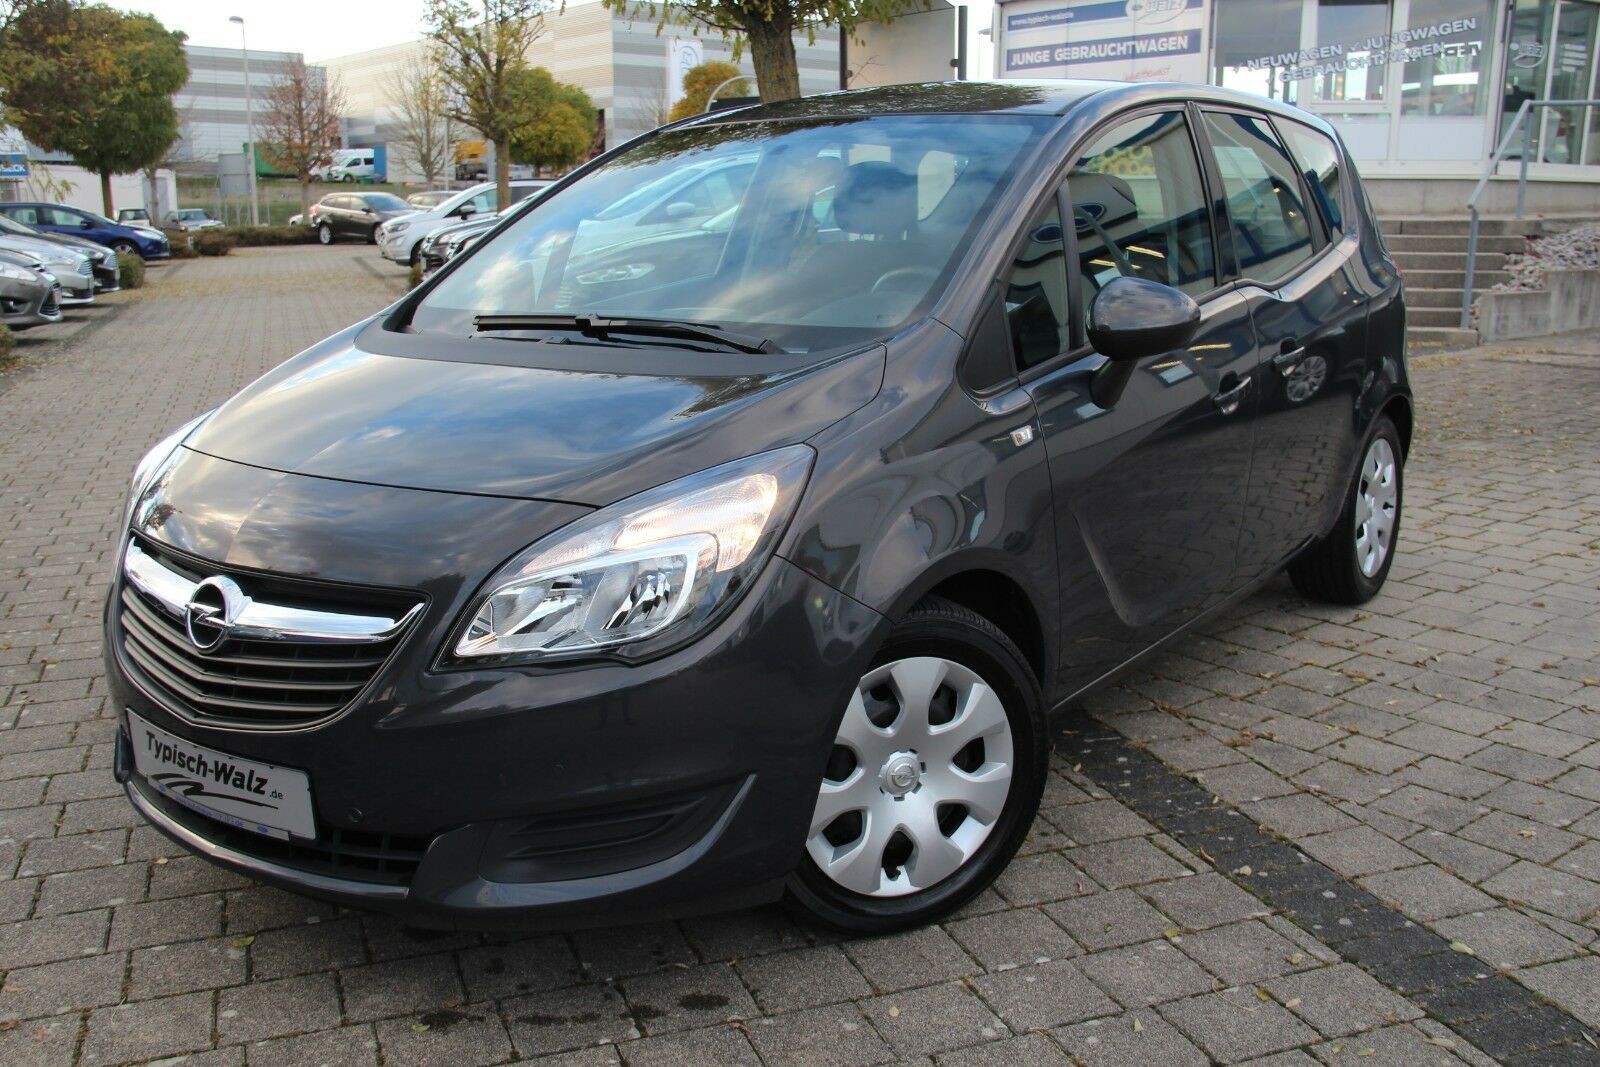 Opel Meriva gebraucht kaufen in Nagold Preis 12990 eur - Int.Nr.: 31834  VERKAUFT